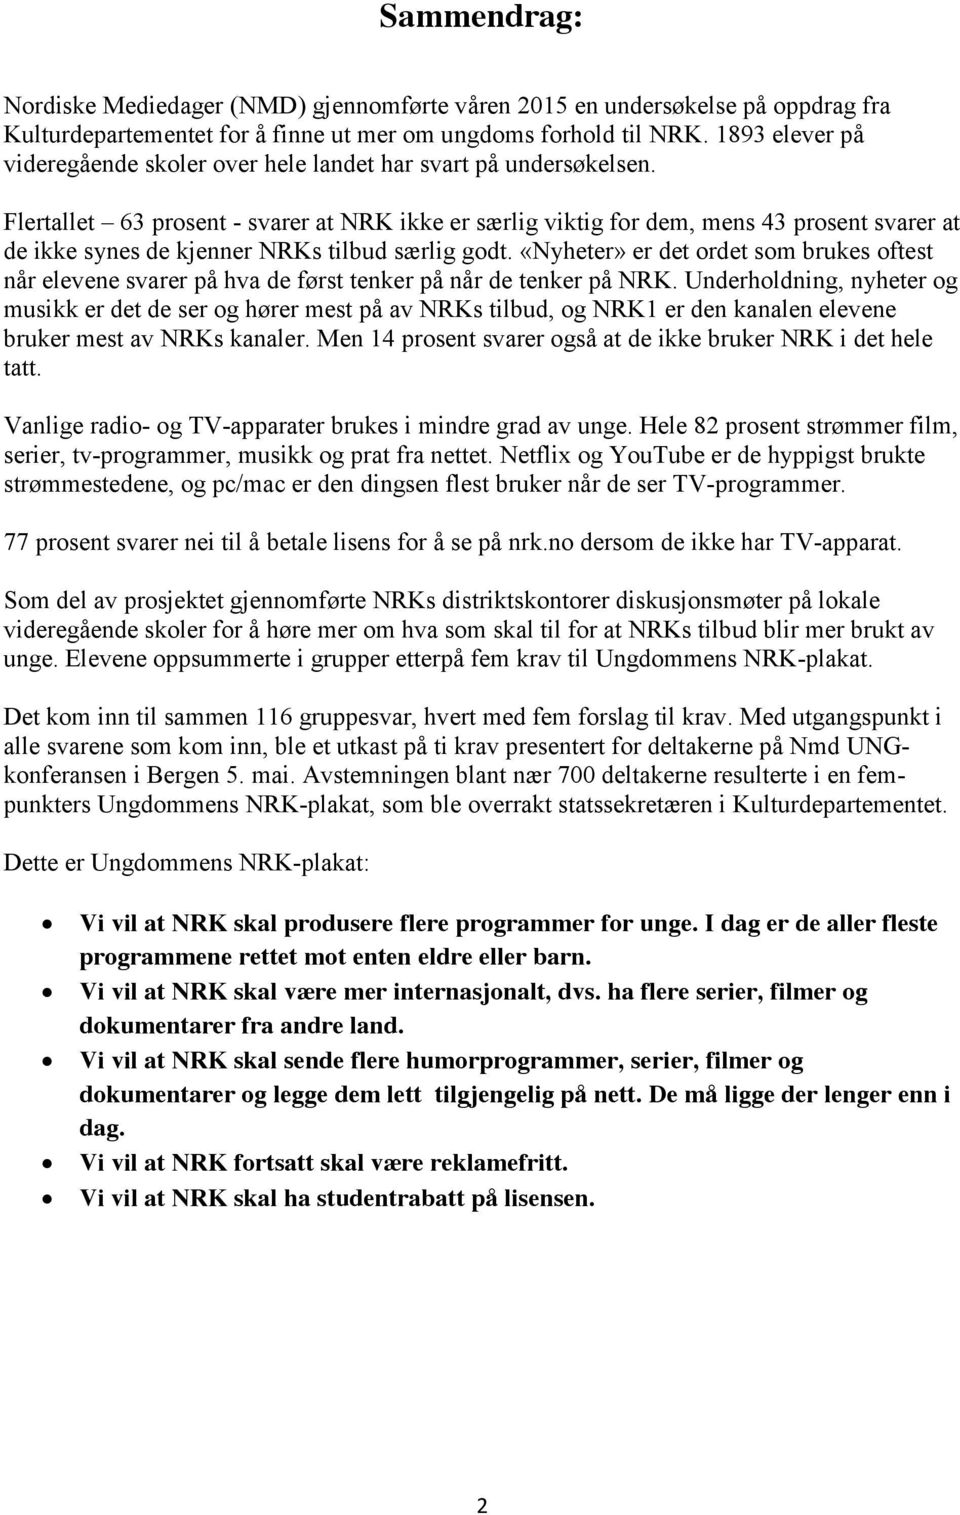 Flertallet 63 prosent - svarer at NRK ikke er særlig viktig for dem, mens 43 prosent svarer at de ikke synes de kjenner NRKs tilbud særlig godt.